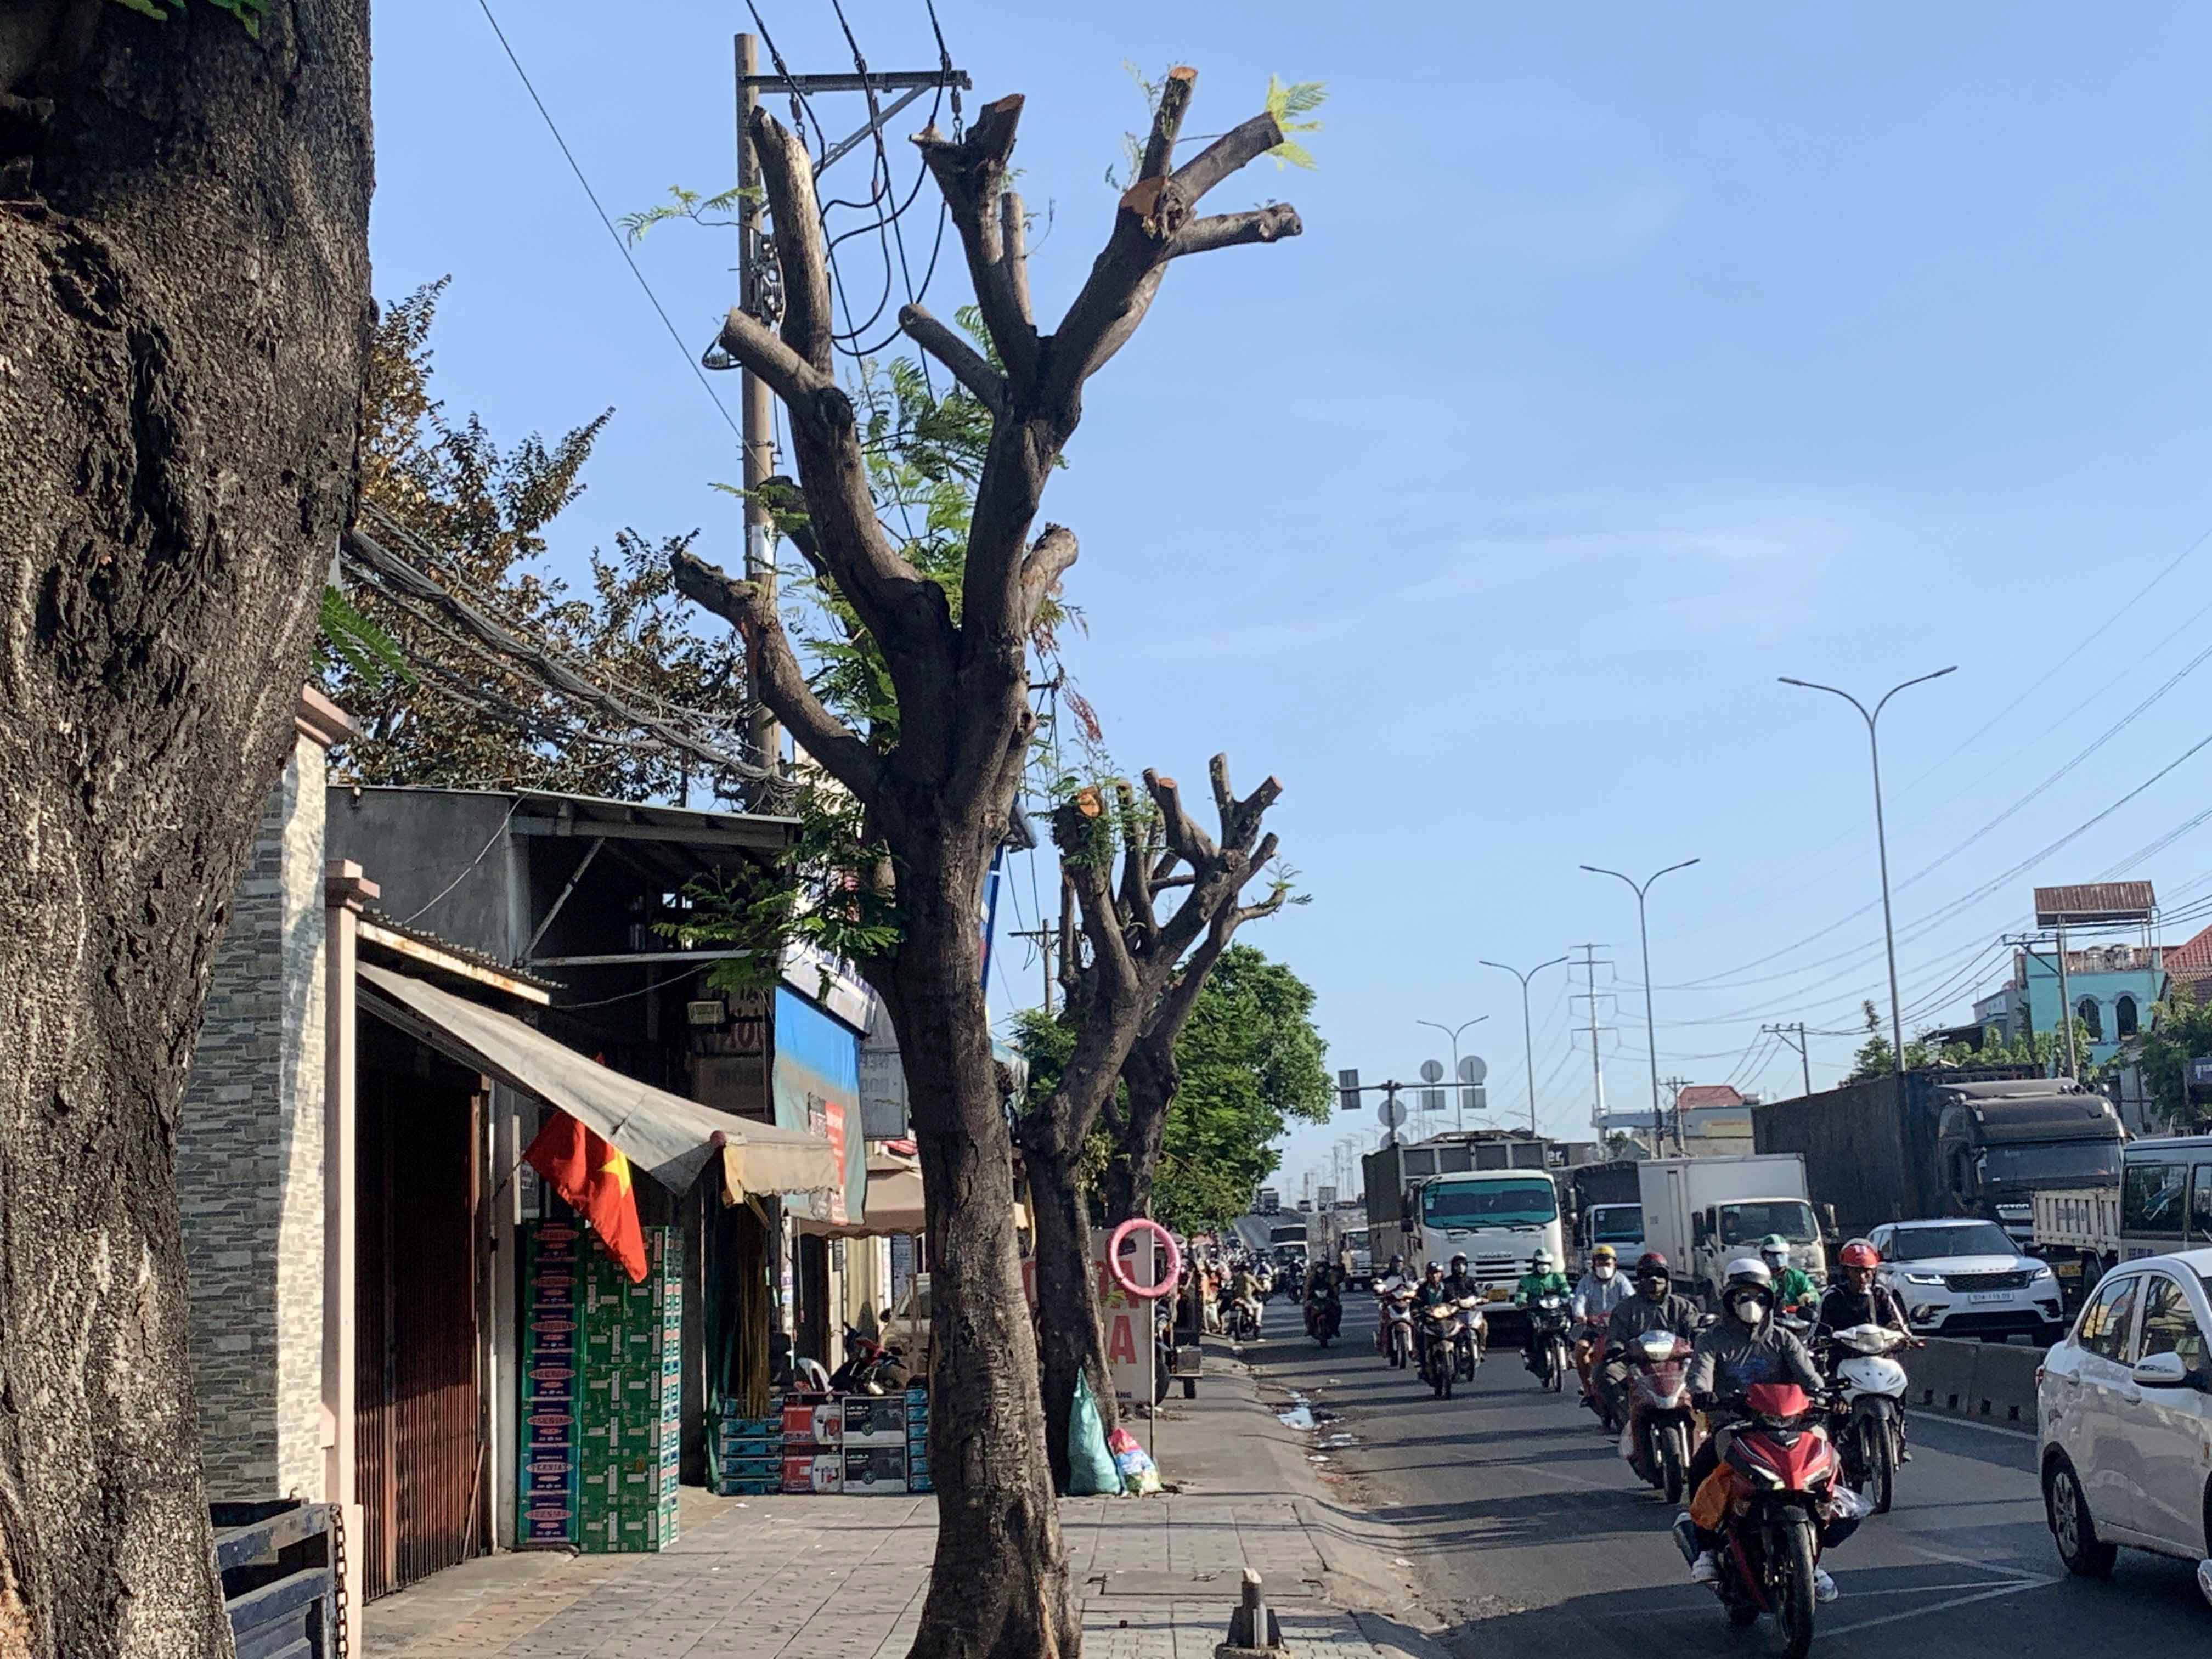 Cách địa điểm trên khoảng 5km, cũng trên Quốc lộ 1 (thuộc phường Bình Hưng Hòa, quận Bình Tân) hàng cây xanh trên vỉa hè cũng bị cắt trụi.